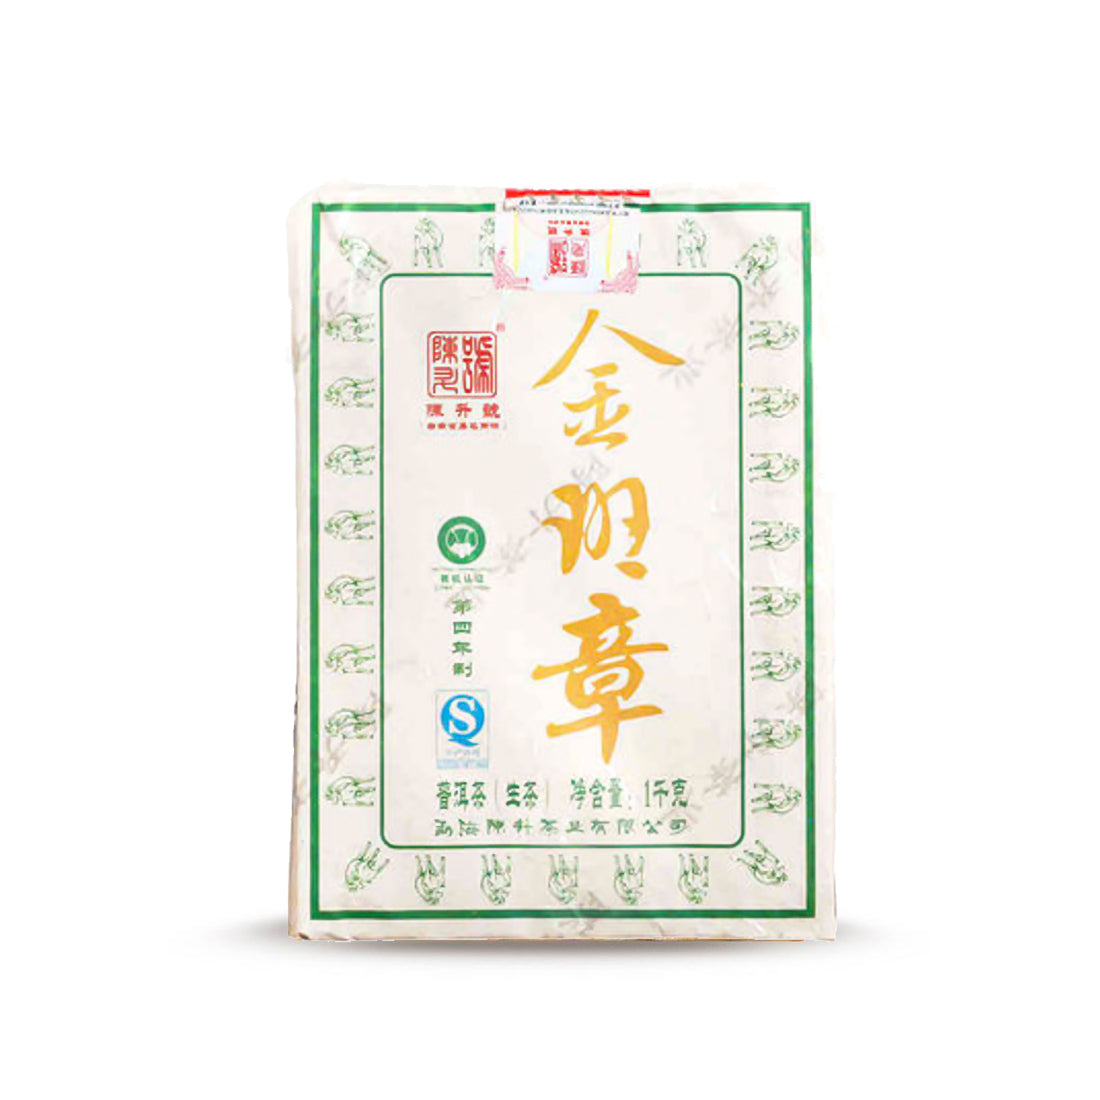 
                  
                    2015 Jin Ban Zhang Raw Pu-erh Tea
                  
                